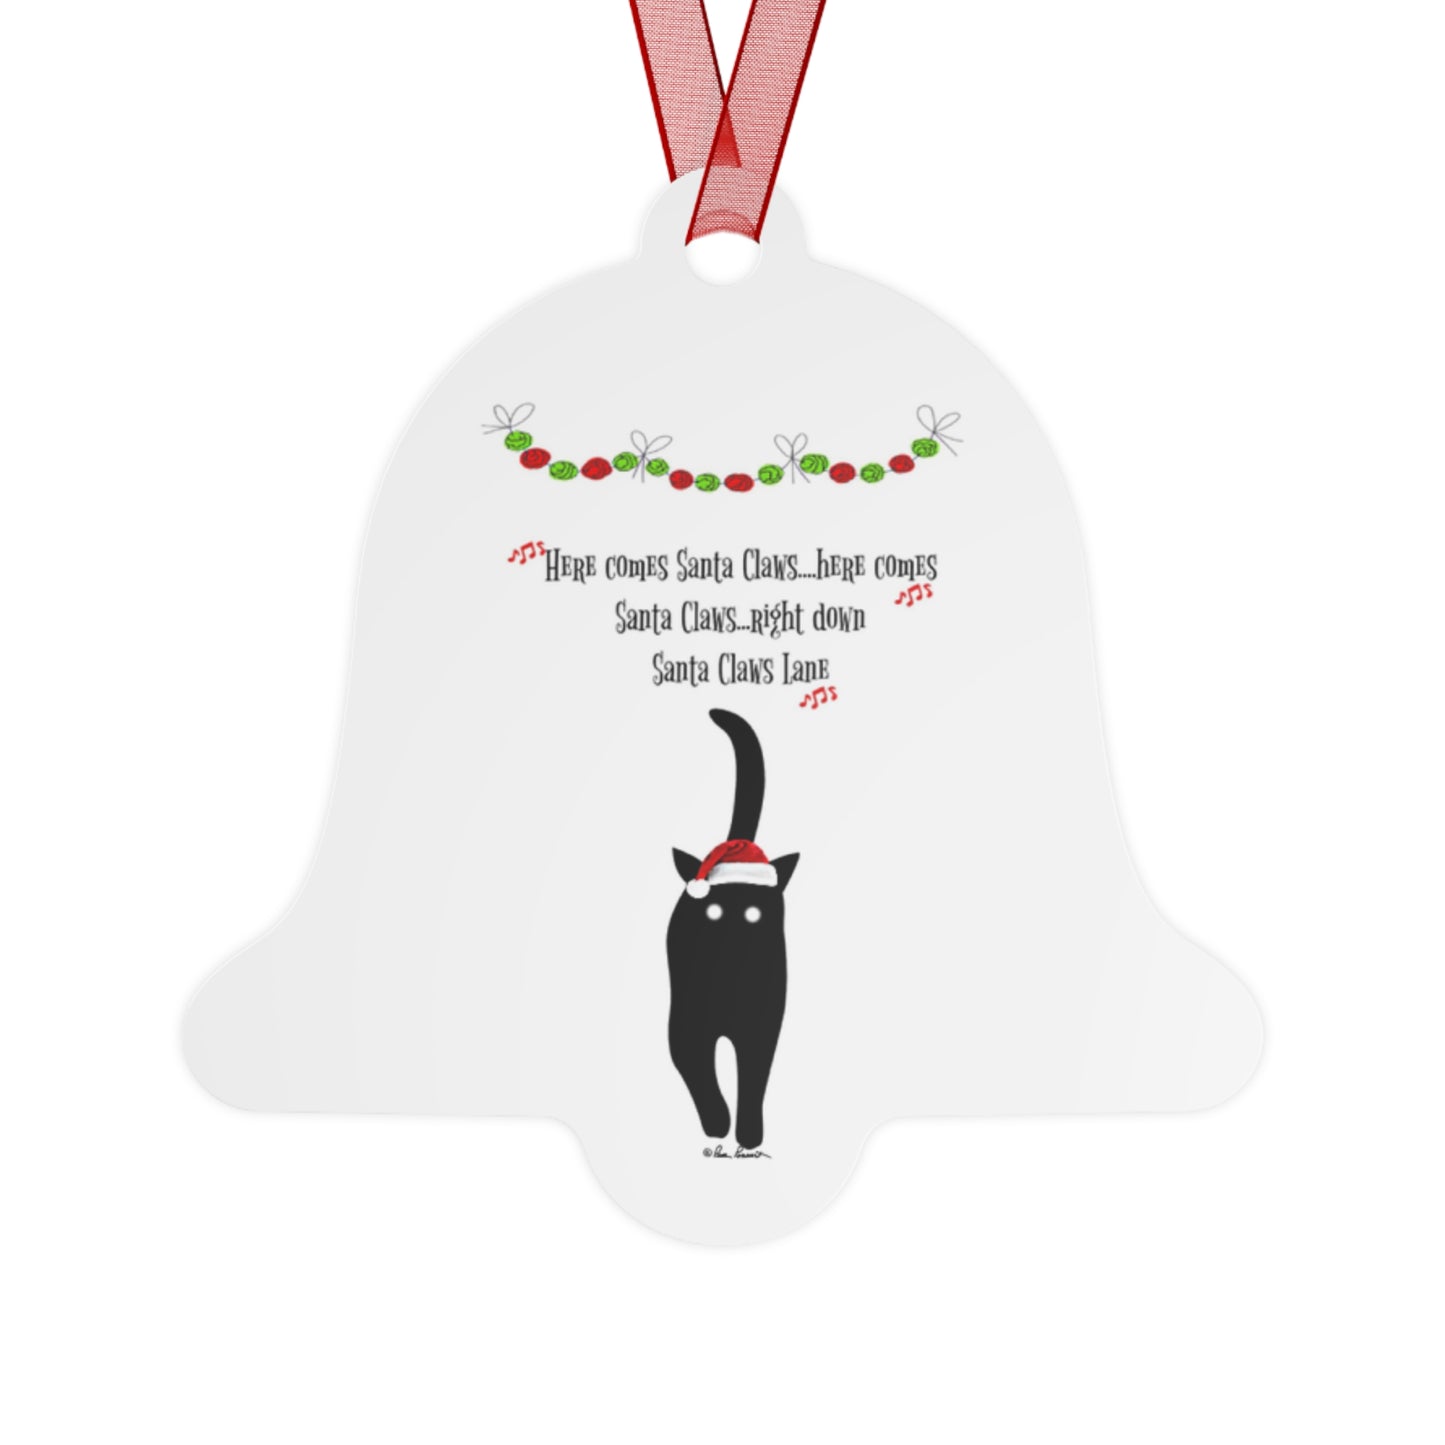 Santa-Claus Holiday Ornament: 4 shapes; Metal; Red ribbon